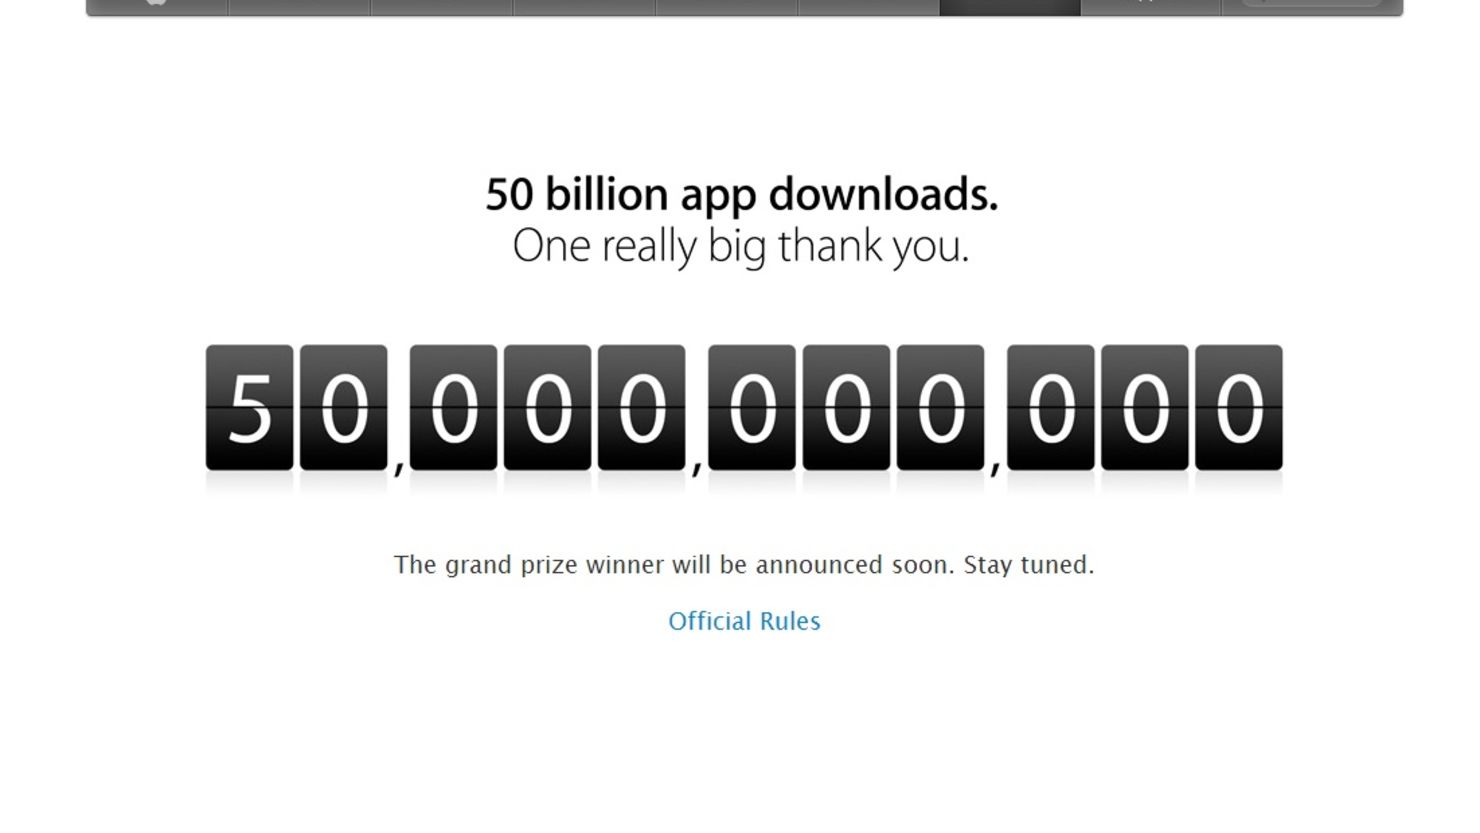 iTunes 50 billion